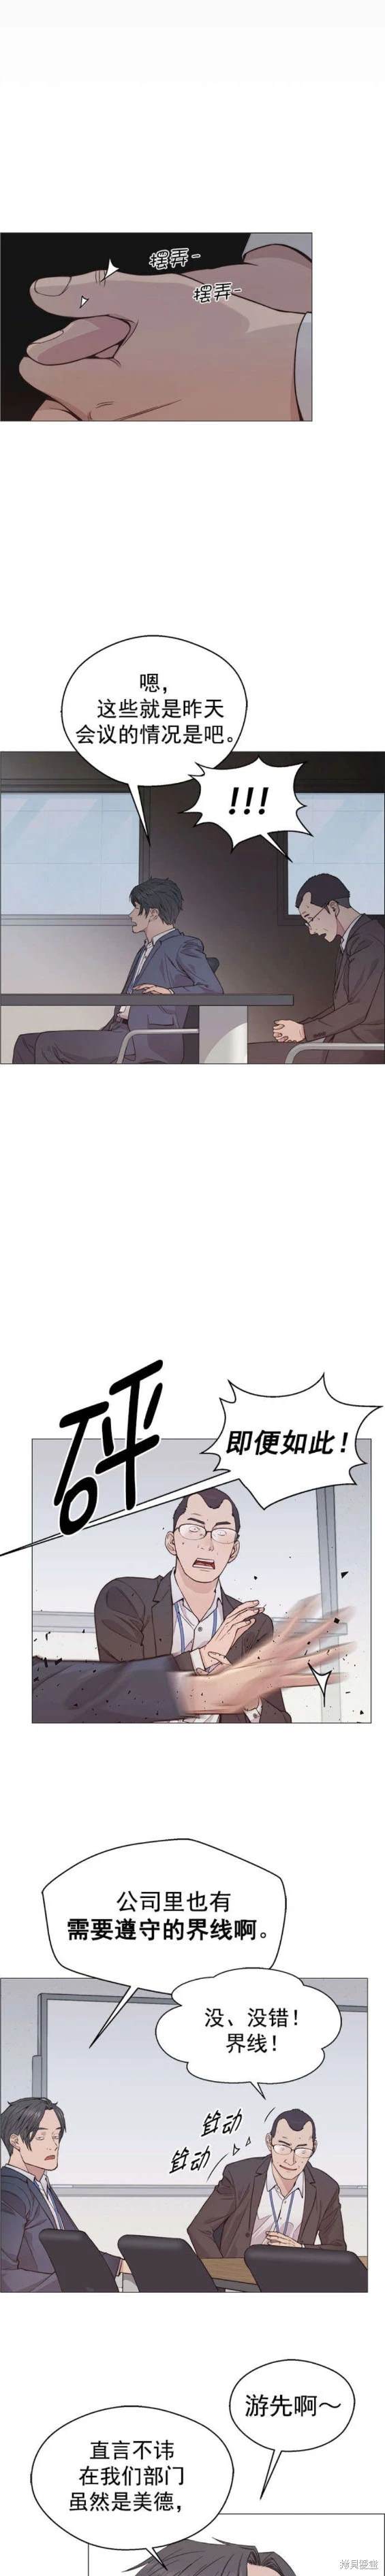 男子汉漫画,第156话12图